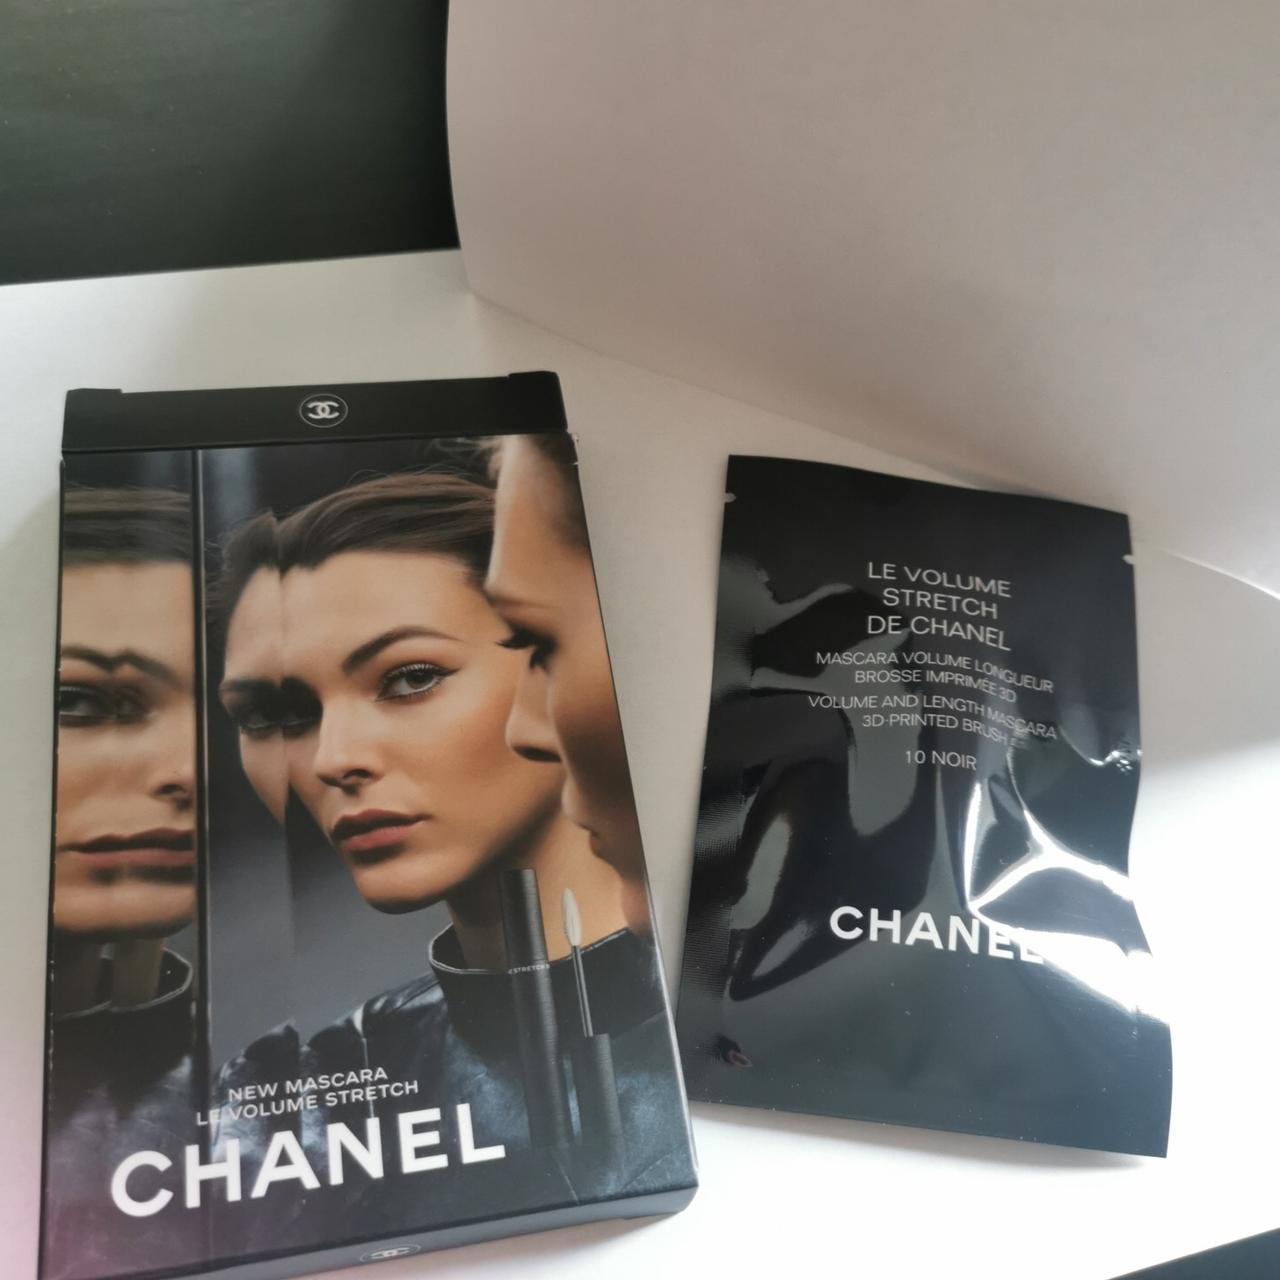 Chanel Le Volume Stretch De Chanel Mascara 10 Noir - Тушь для ресниц, 1,5 г  купить в Amoreshop